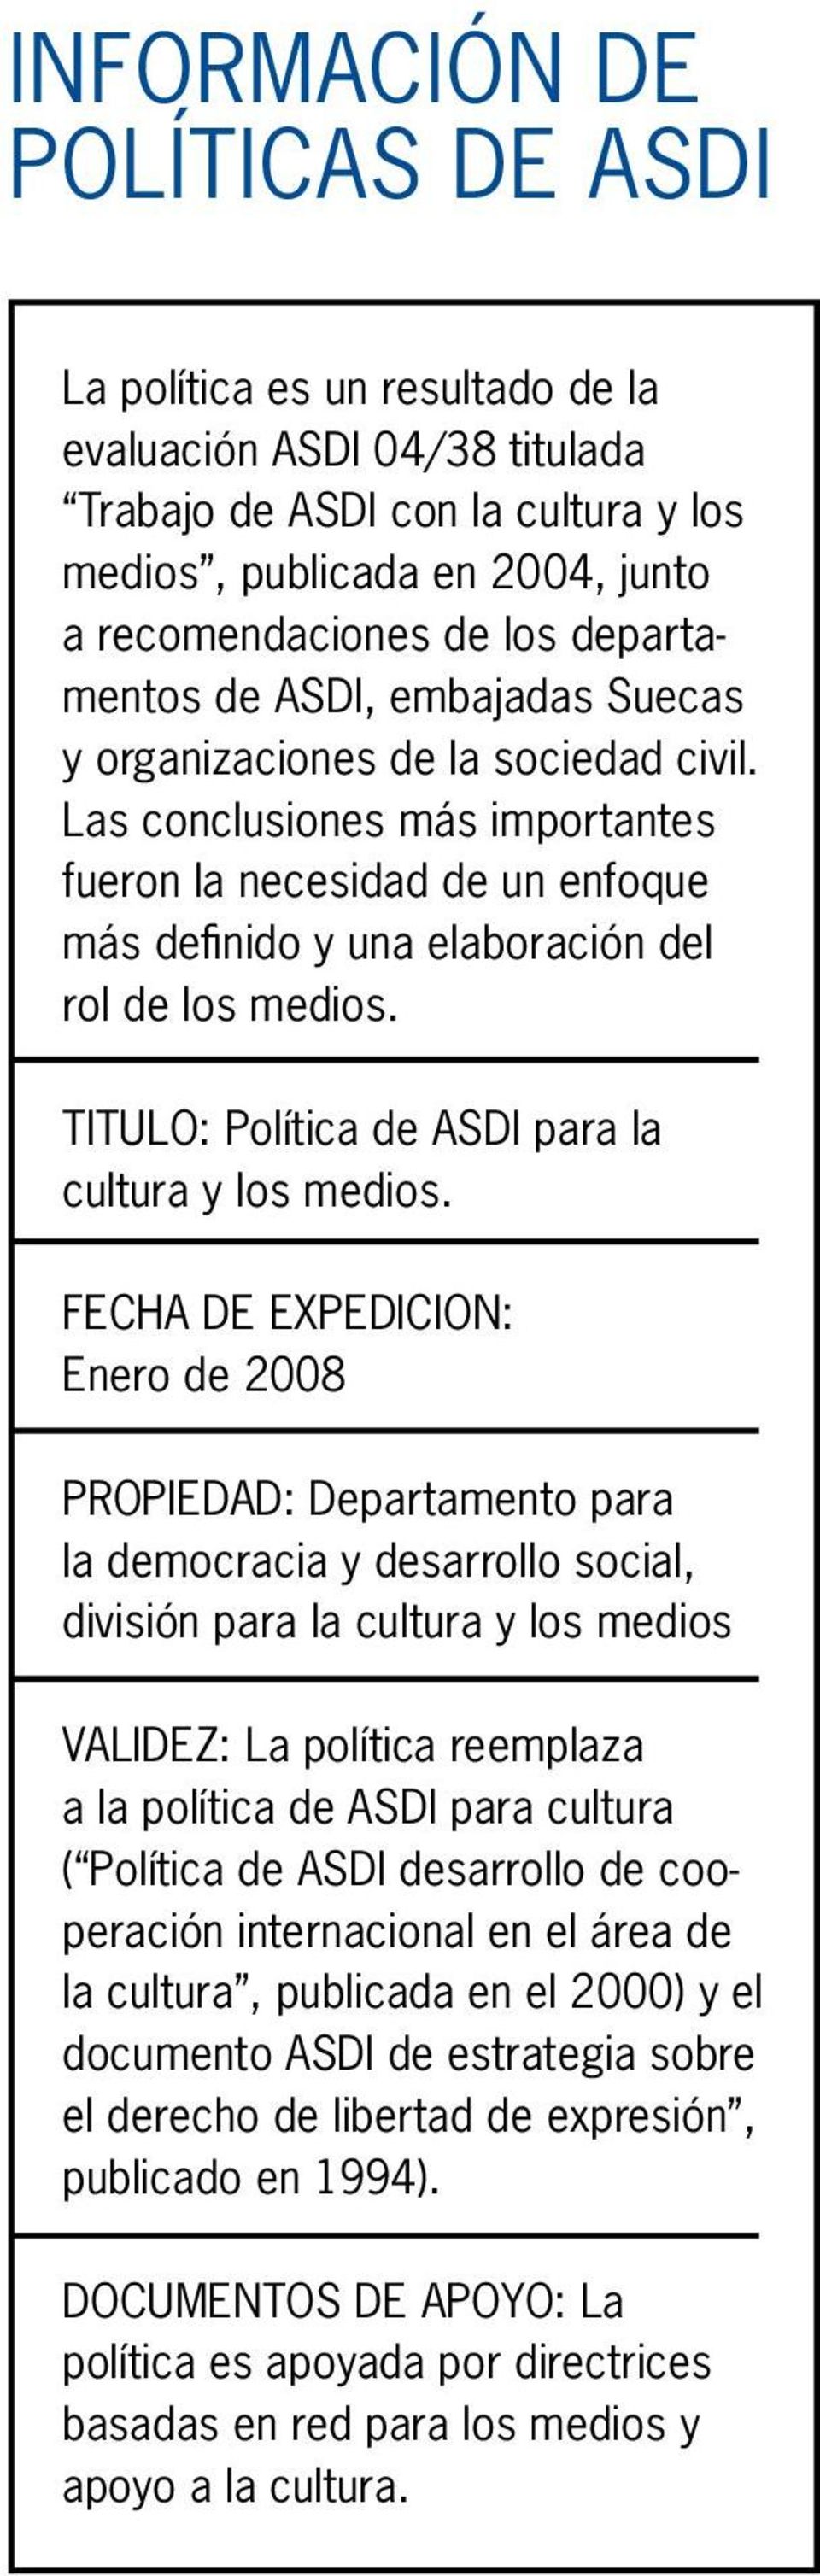 TITULO: Política de ASDI para la cultura y los medios.